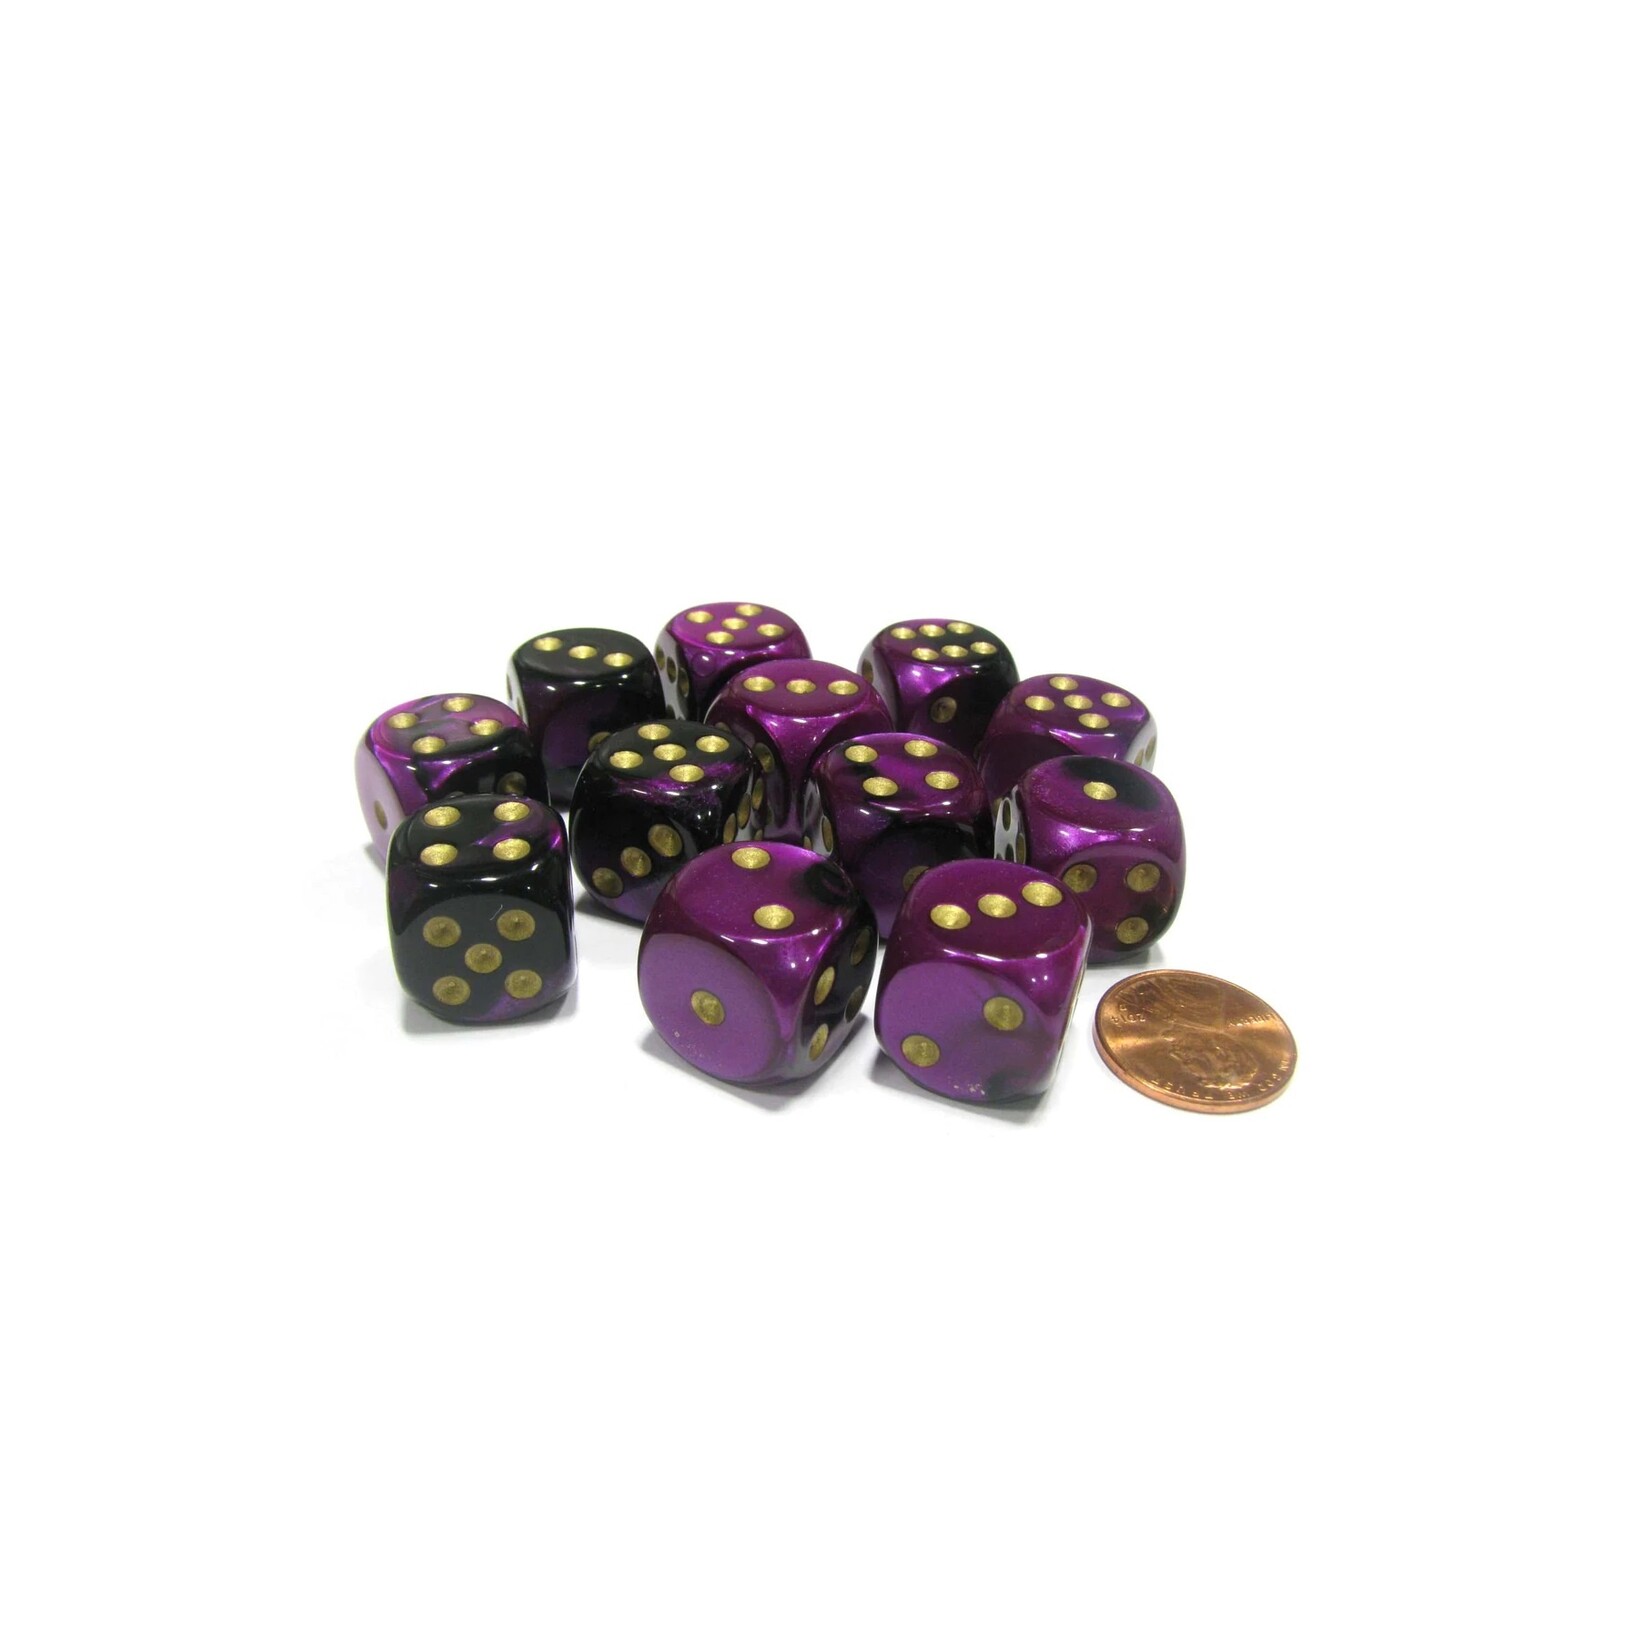 Chessex Brique de 12 d6 16mm Gemini noir/violet avec points dorés